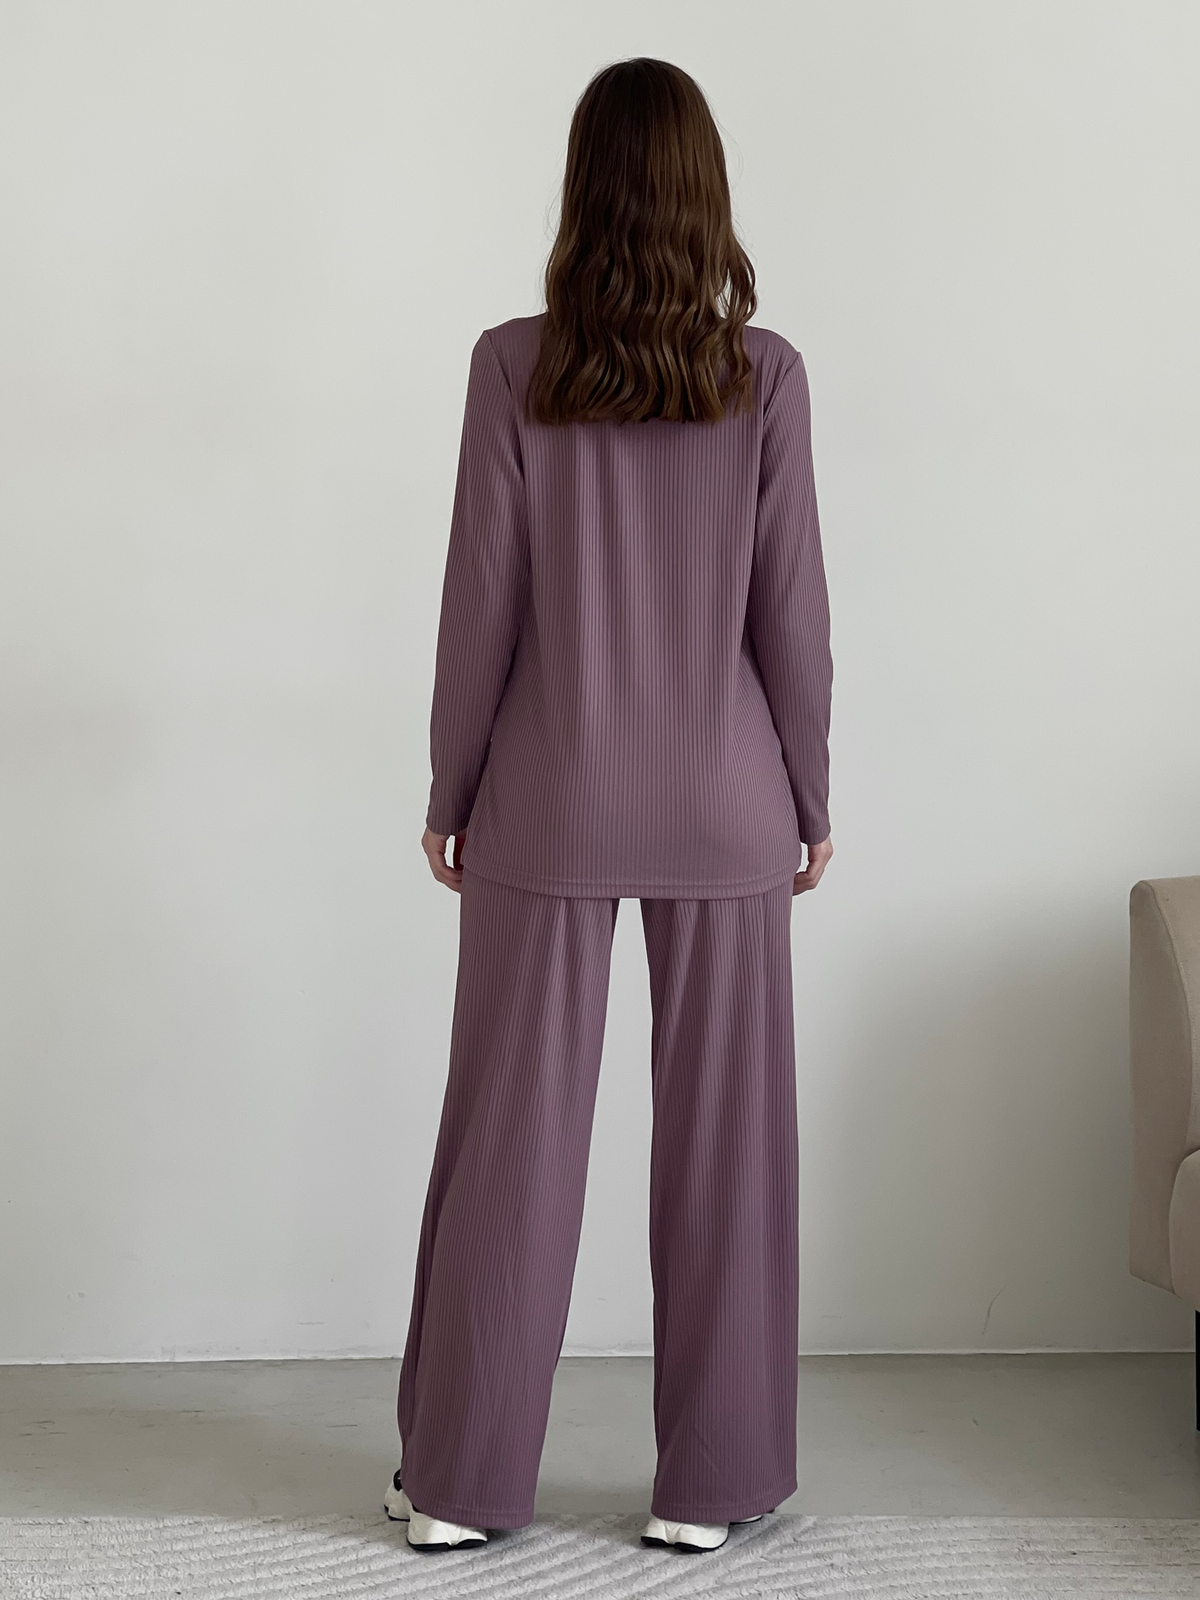 Купить Костюм с широкими брюками в рубчик фиолетовый Merlini Менто 100001162, размер 42-44 (S-M) в интернет-магазине